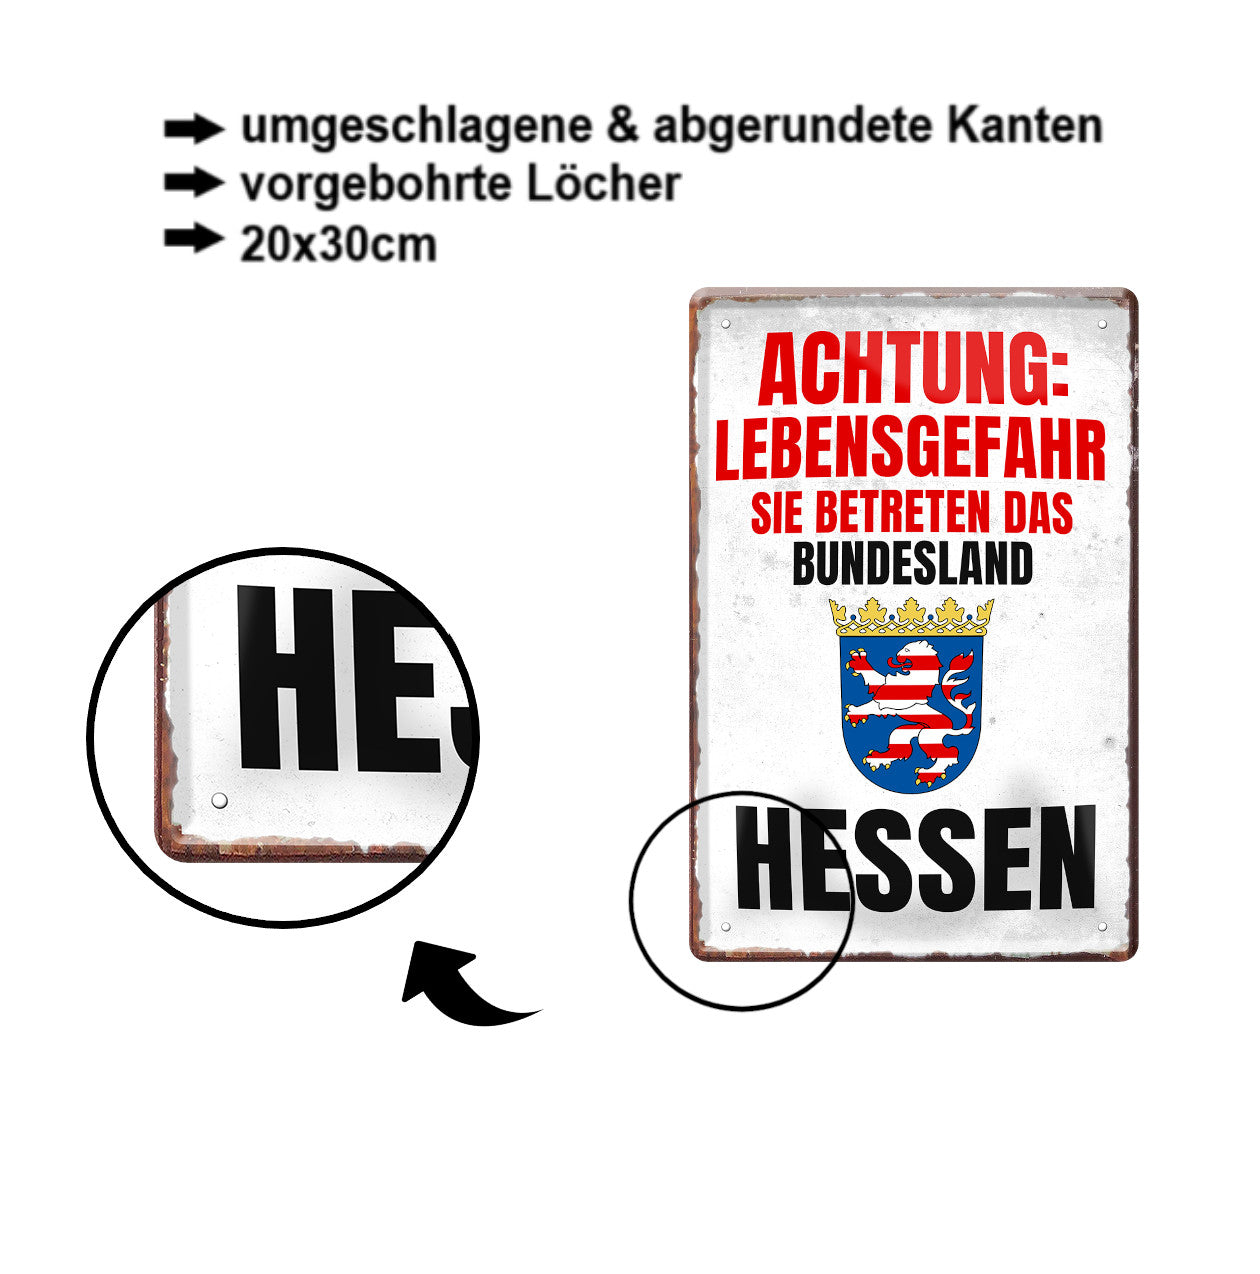 Blechschild ''Achtung Lebensgefahr Hessen'' 20x30cm